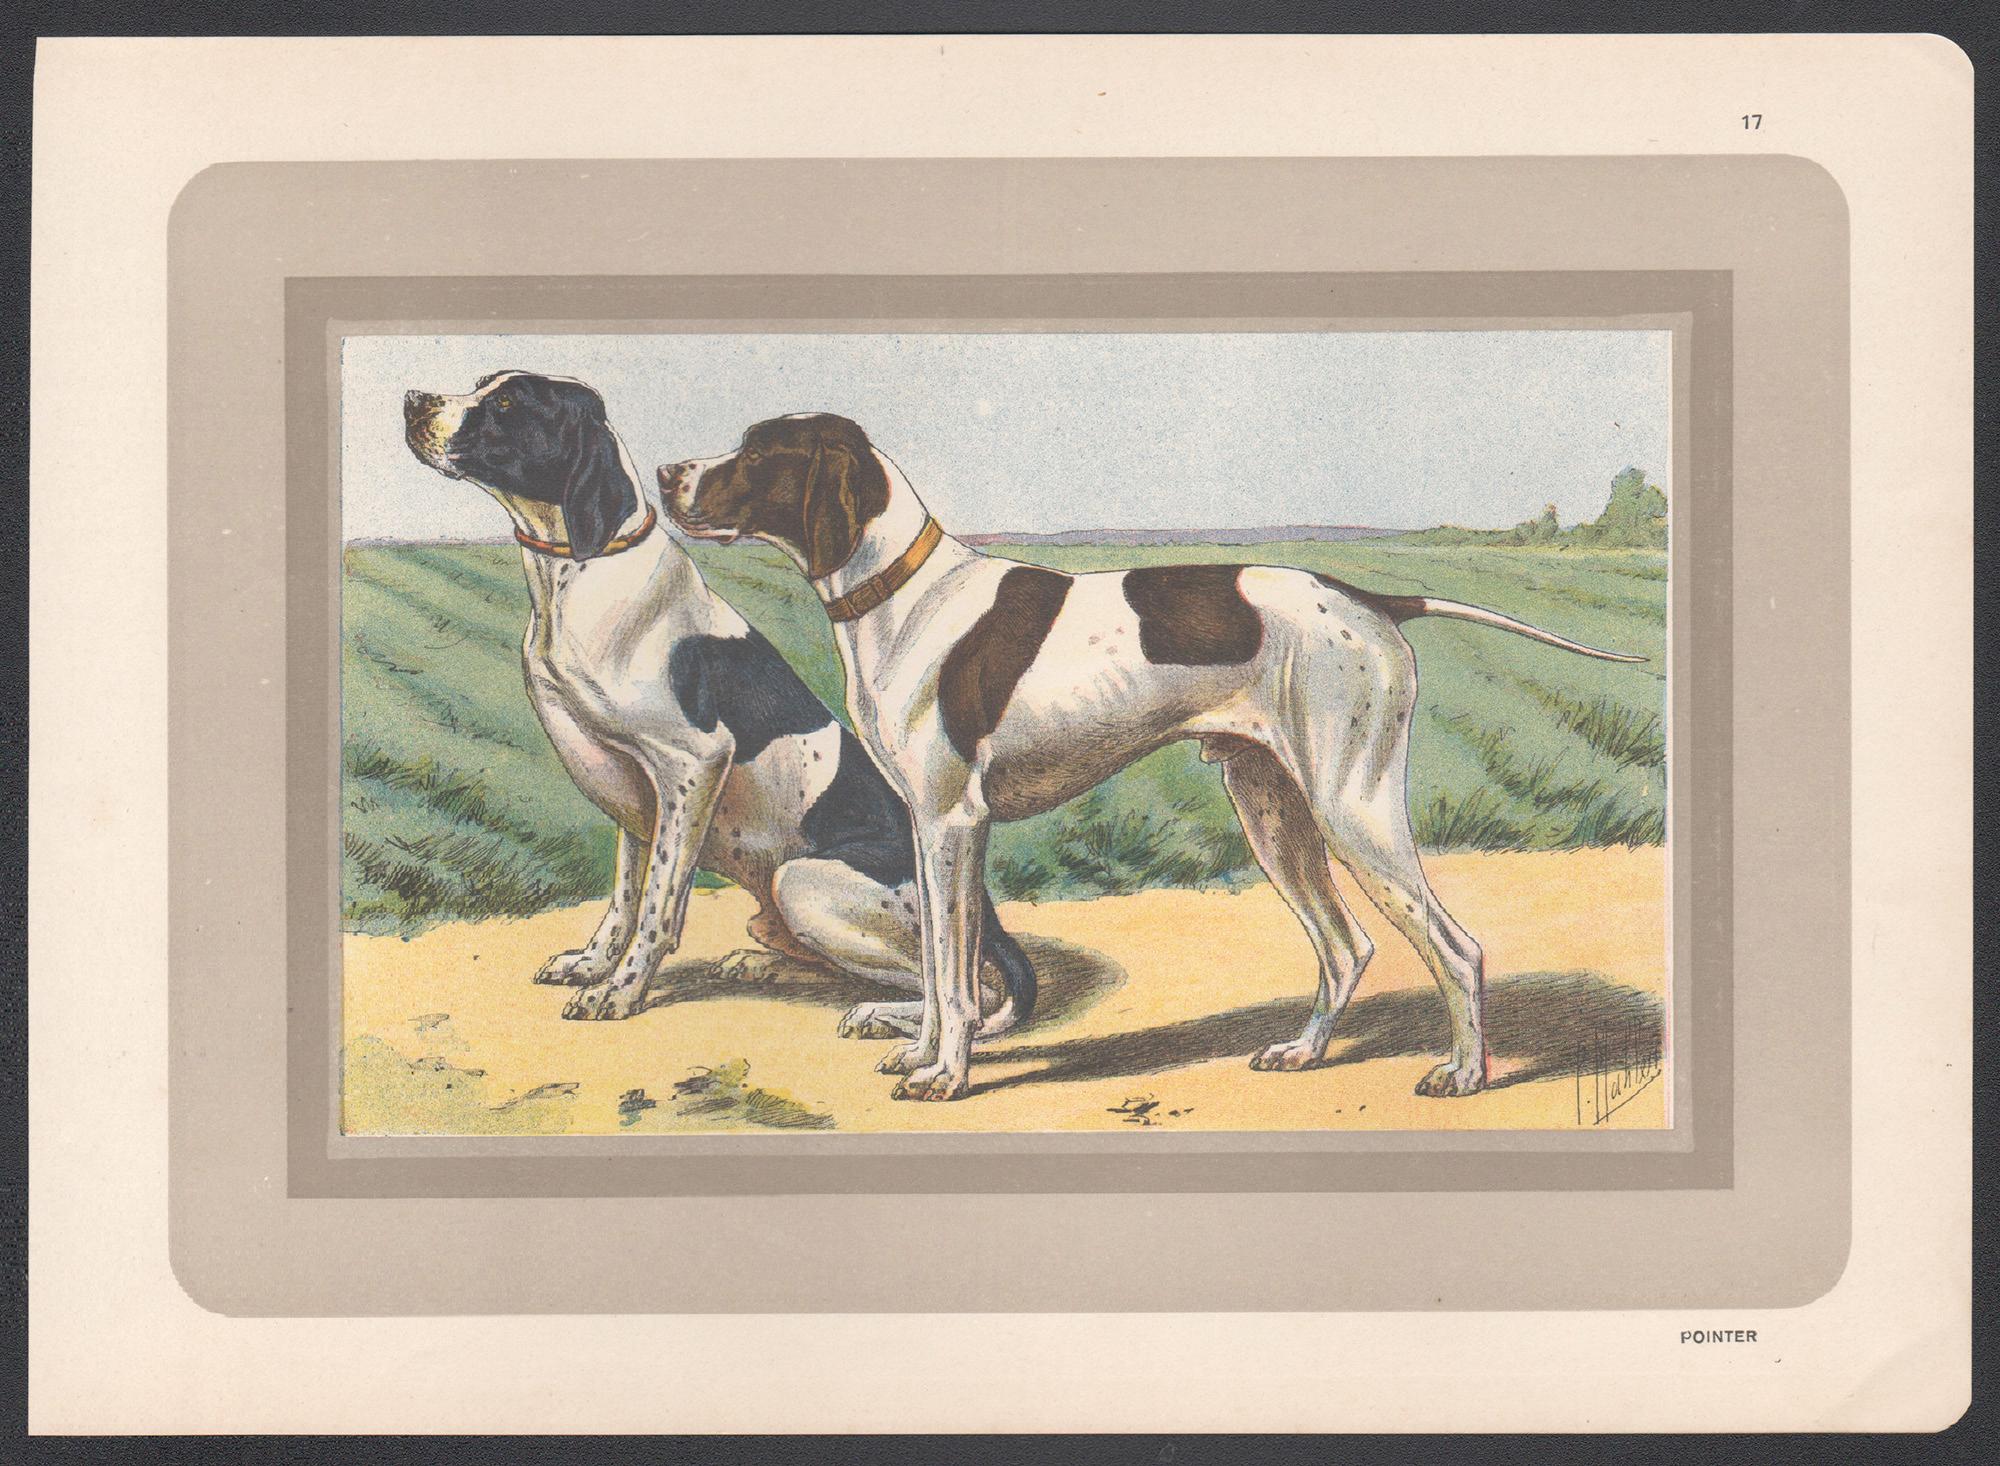 Pointer, impression chromolithographie d'un chien de chasse français, années 1930 - Print de P. Mahler